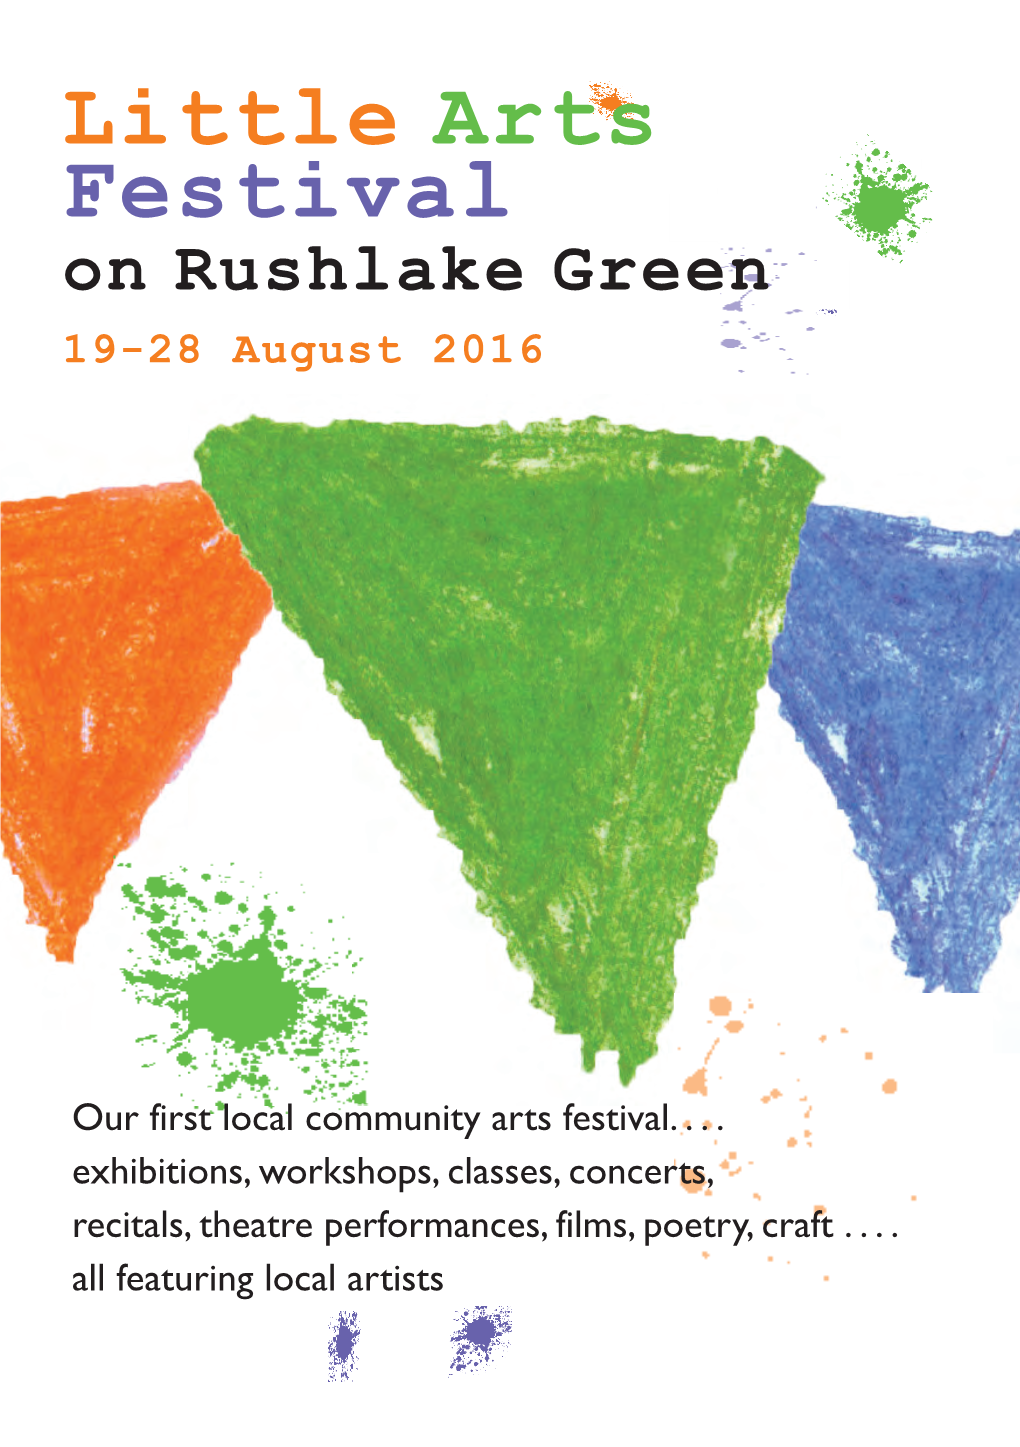 Little Arts Festival on Rushlake Green 19-28 August 2016